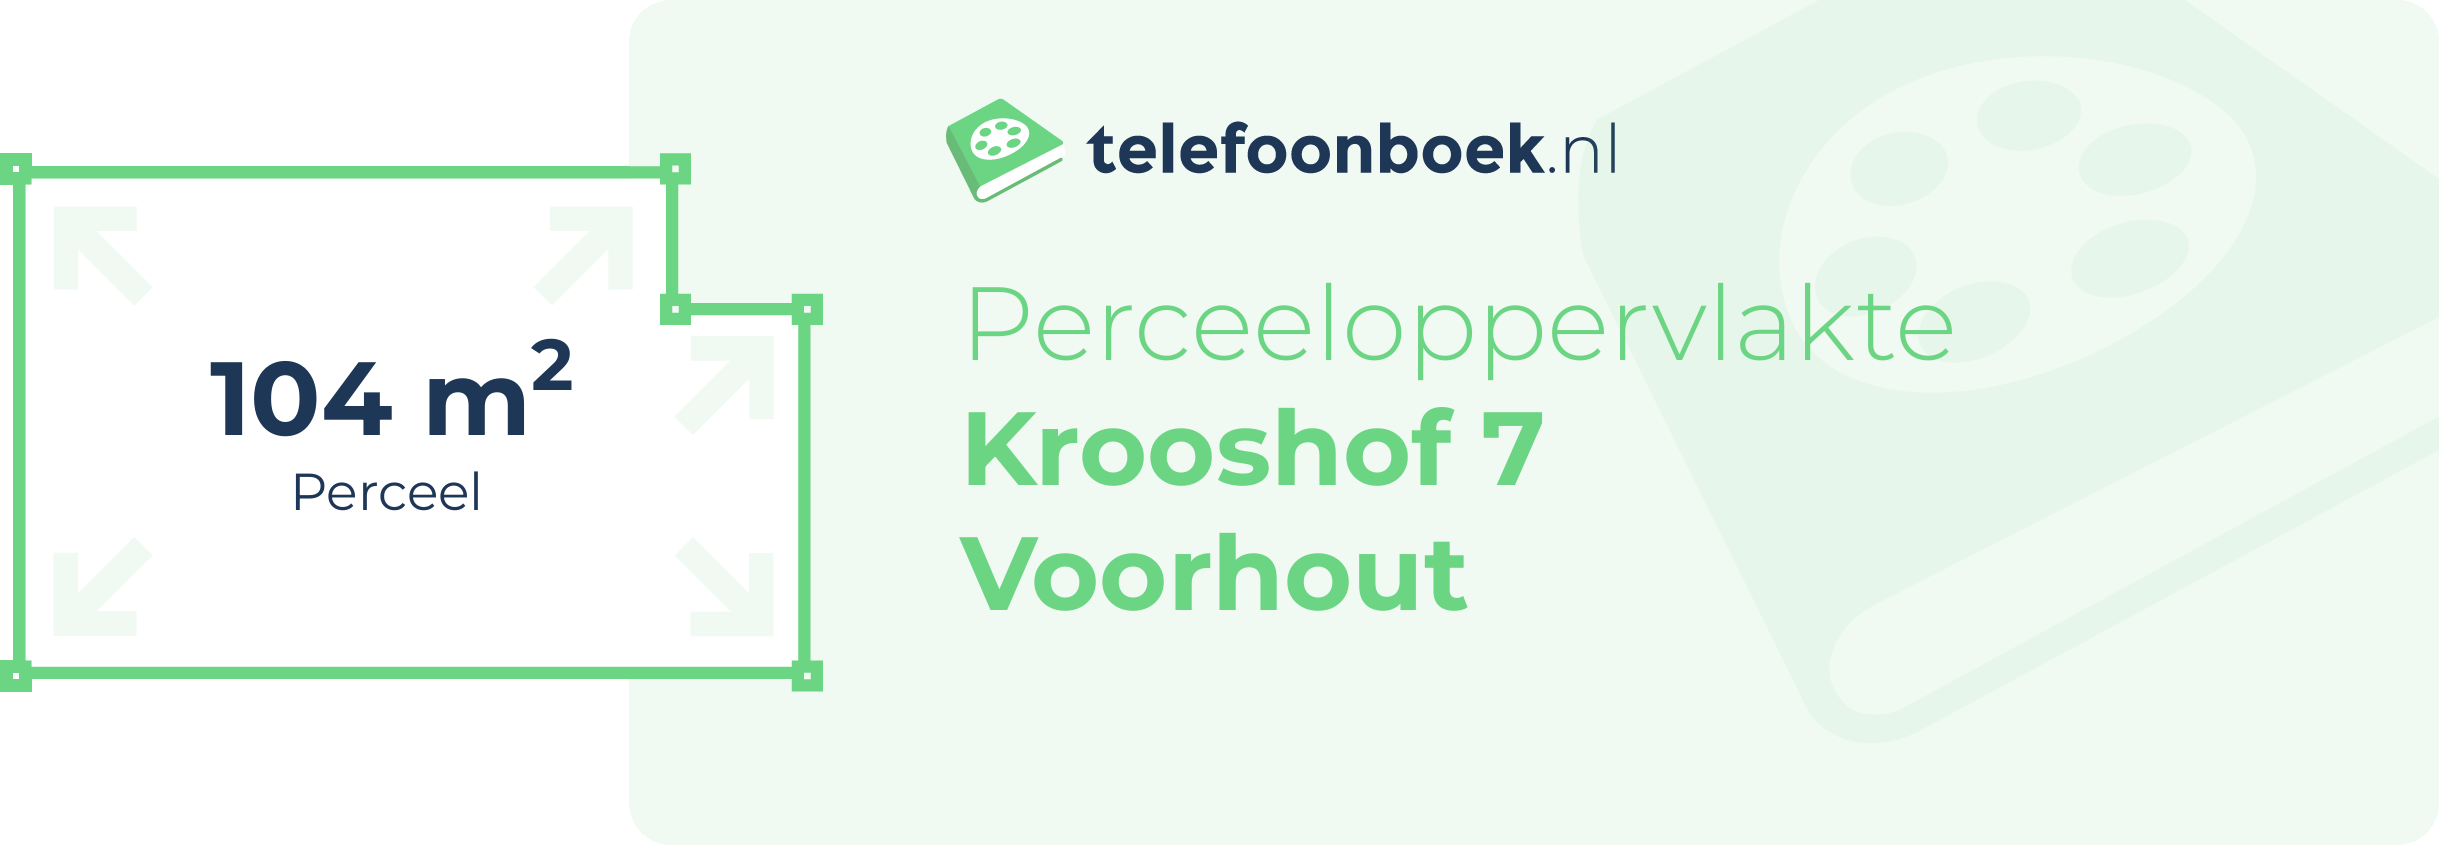 Perceeloppervlakte Krooshof 7 Voorhout